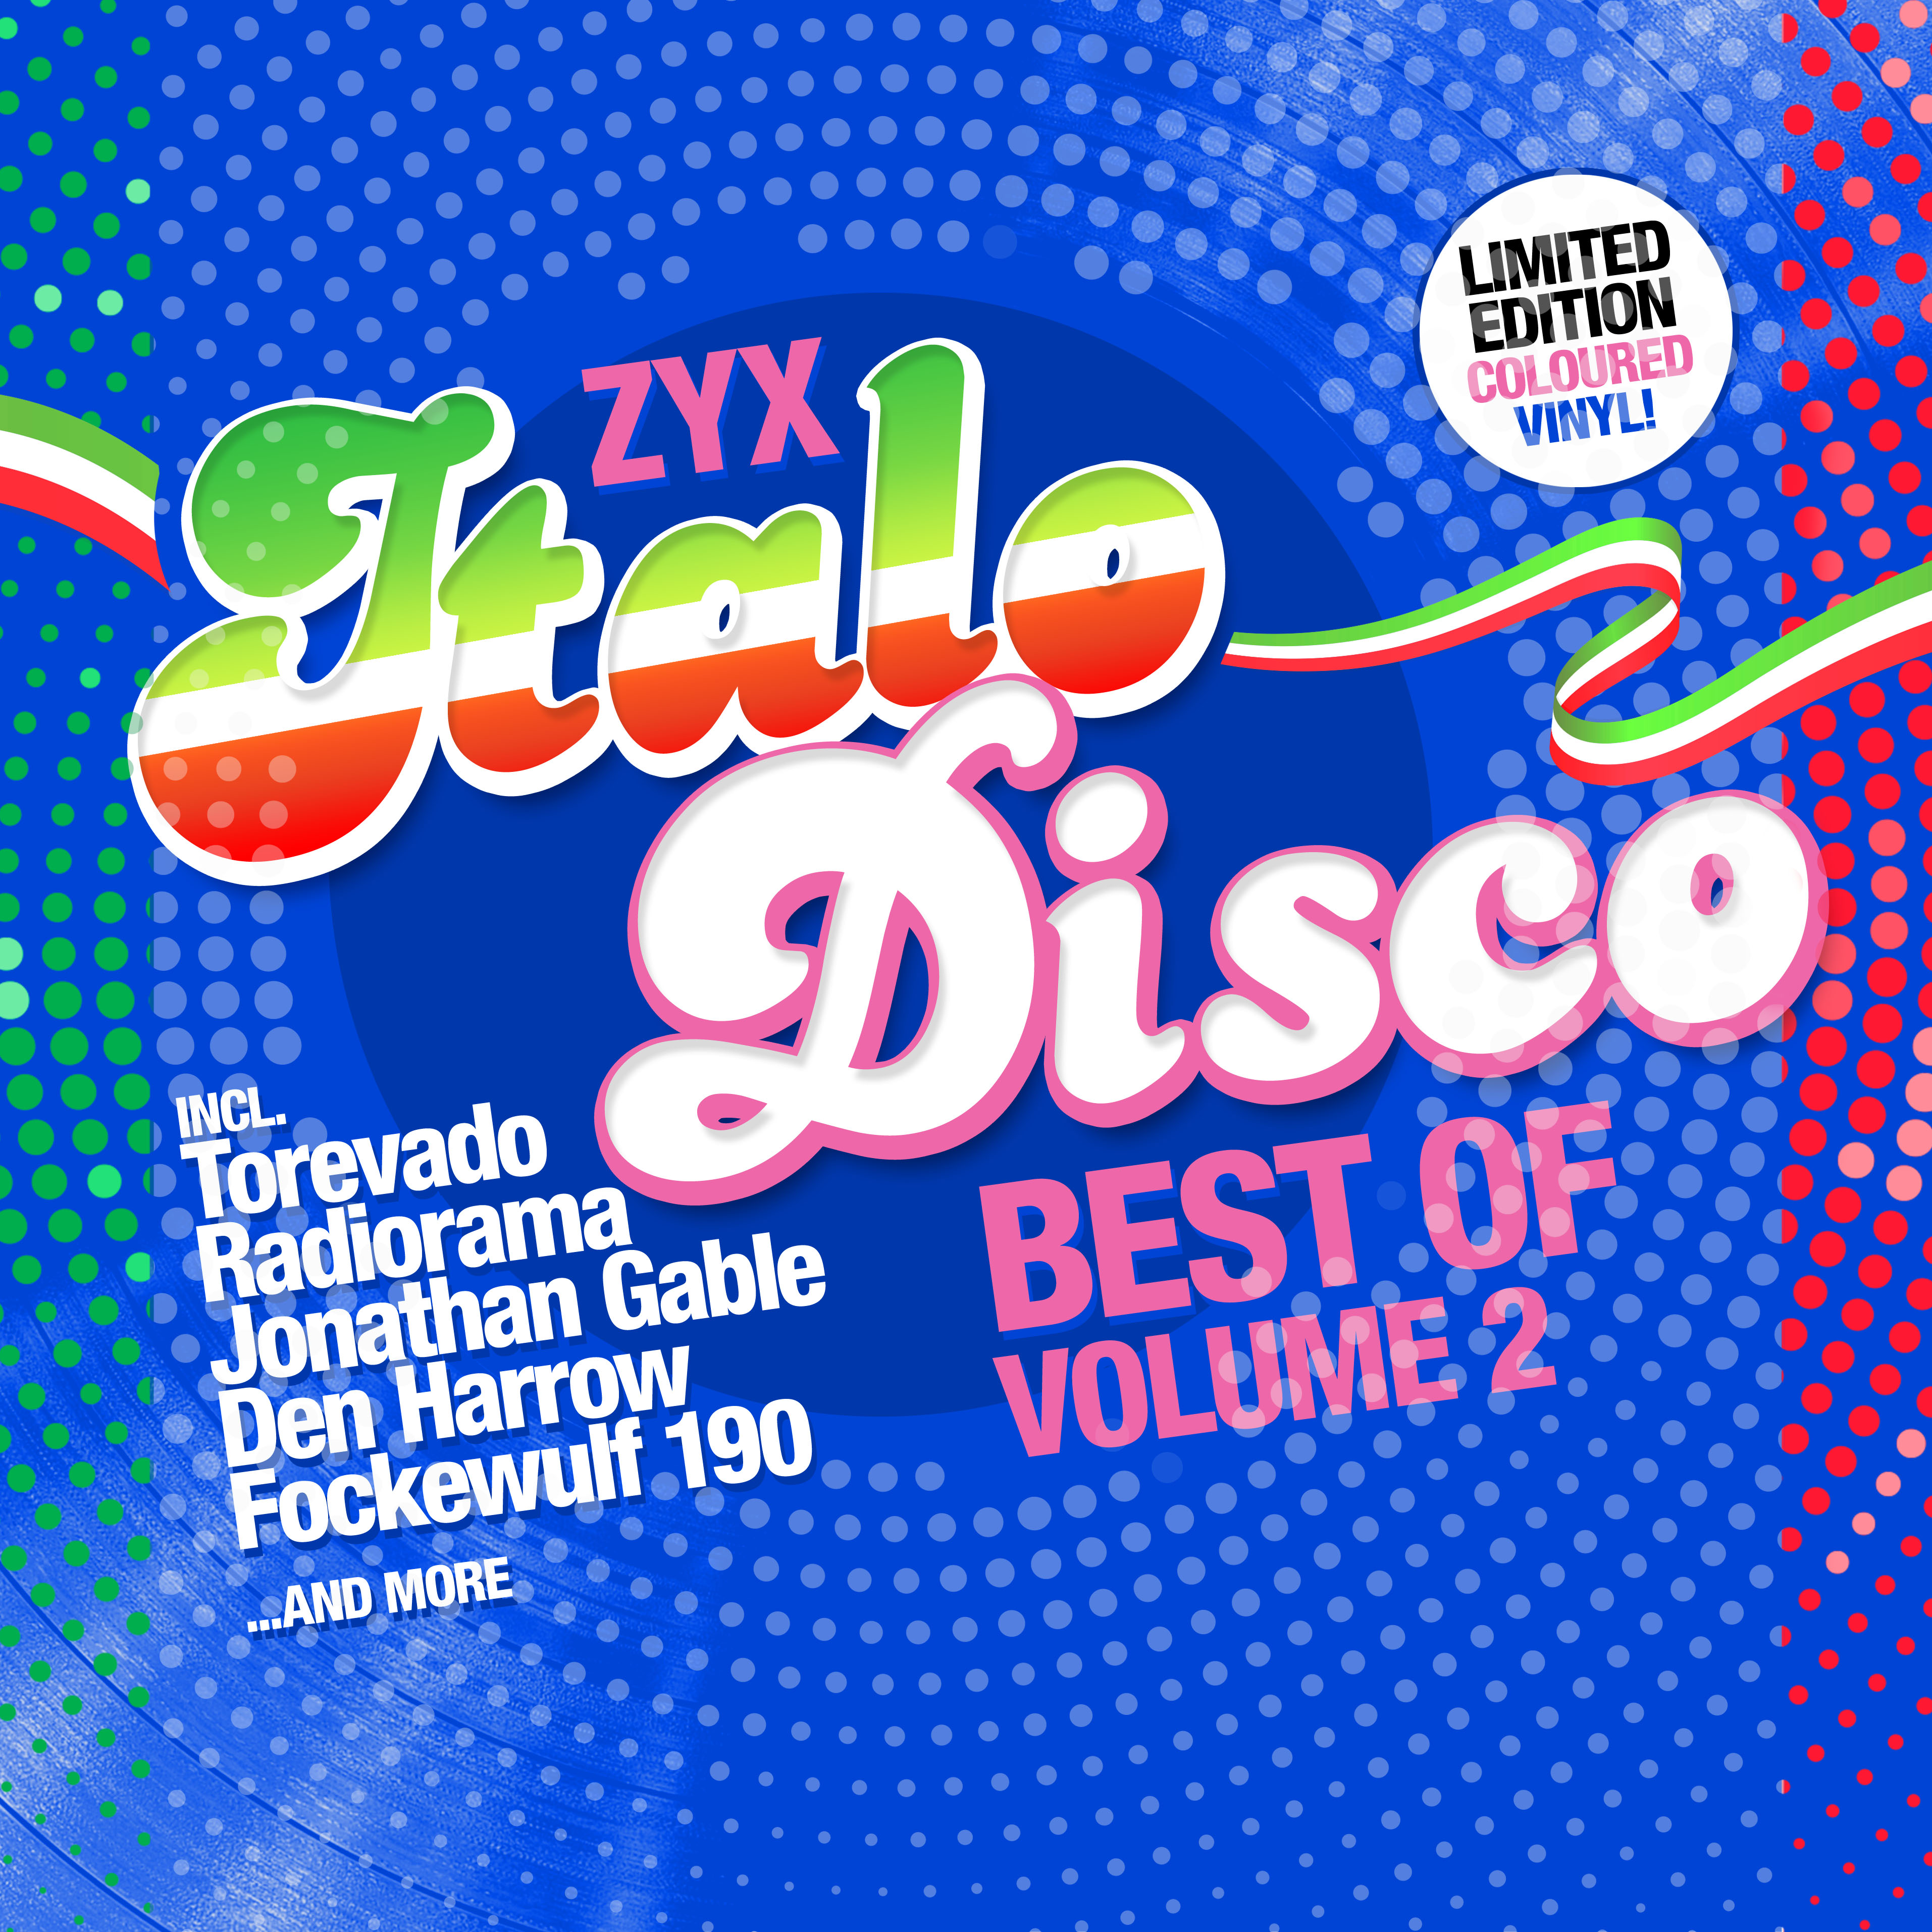 Mp3 new disco. ZYX Italo Disco - best of Volume 2. ZYX Italo Disco New Generation. ZYX Italo Disco Hits. Disco Vinyl.